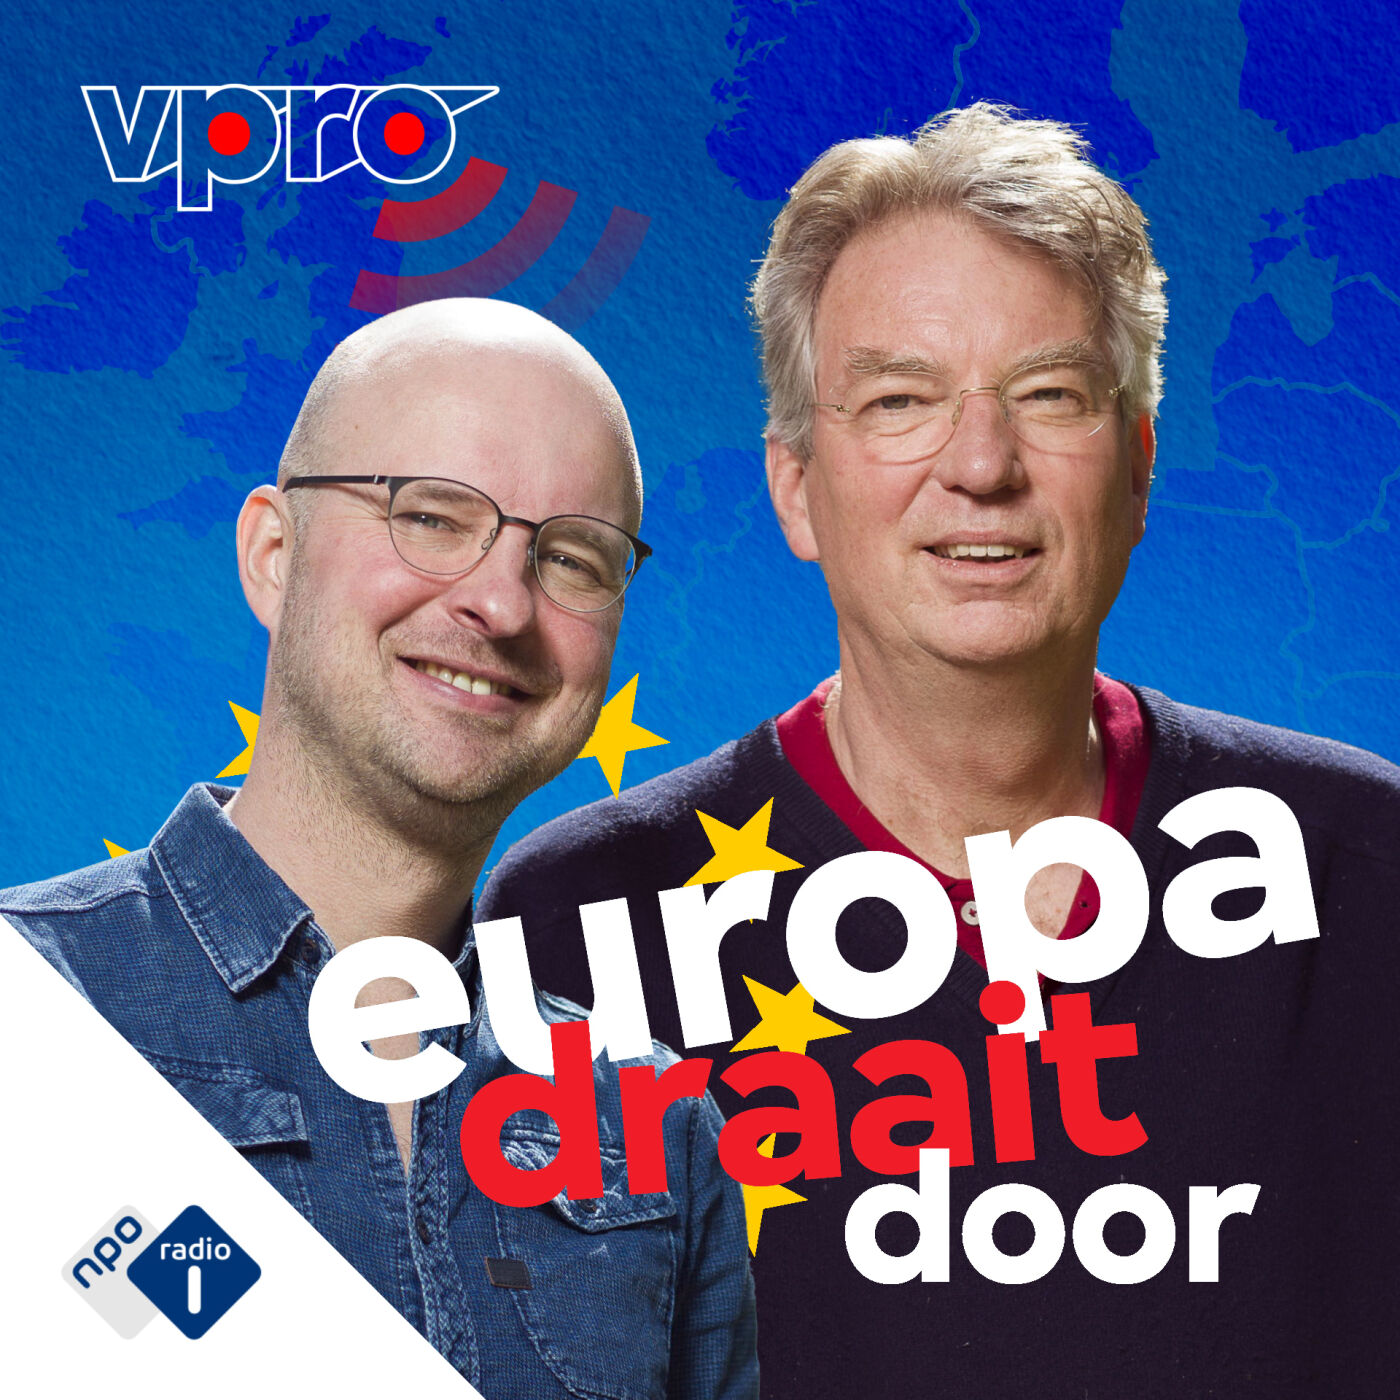 Europa draait door podcast show image